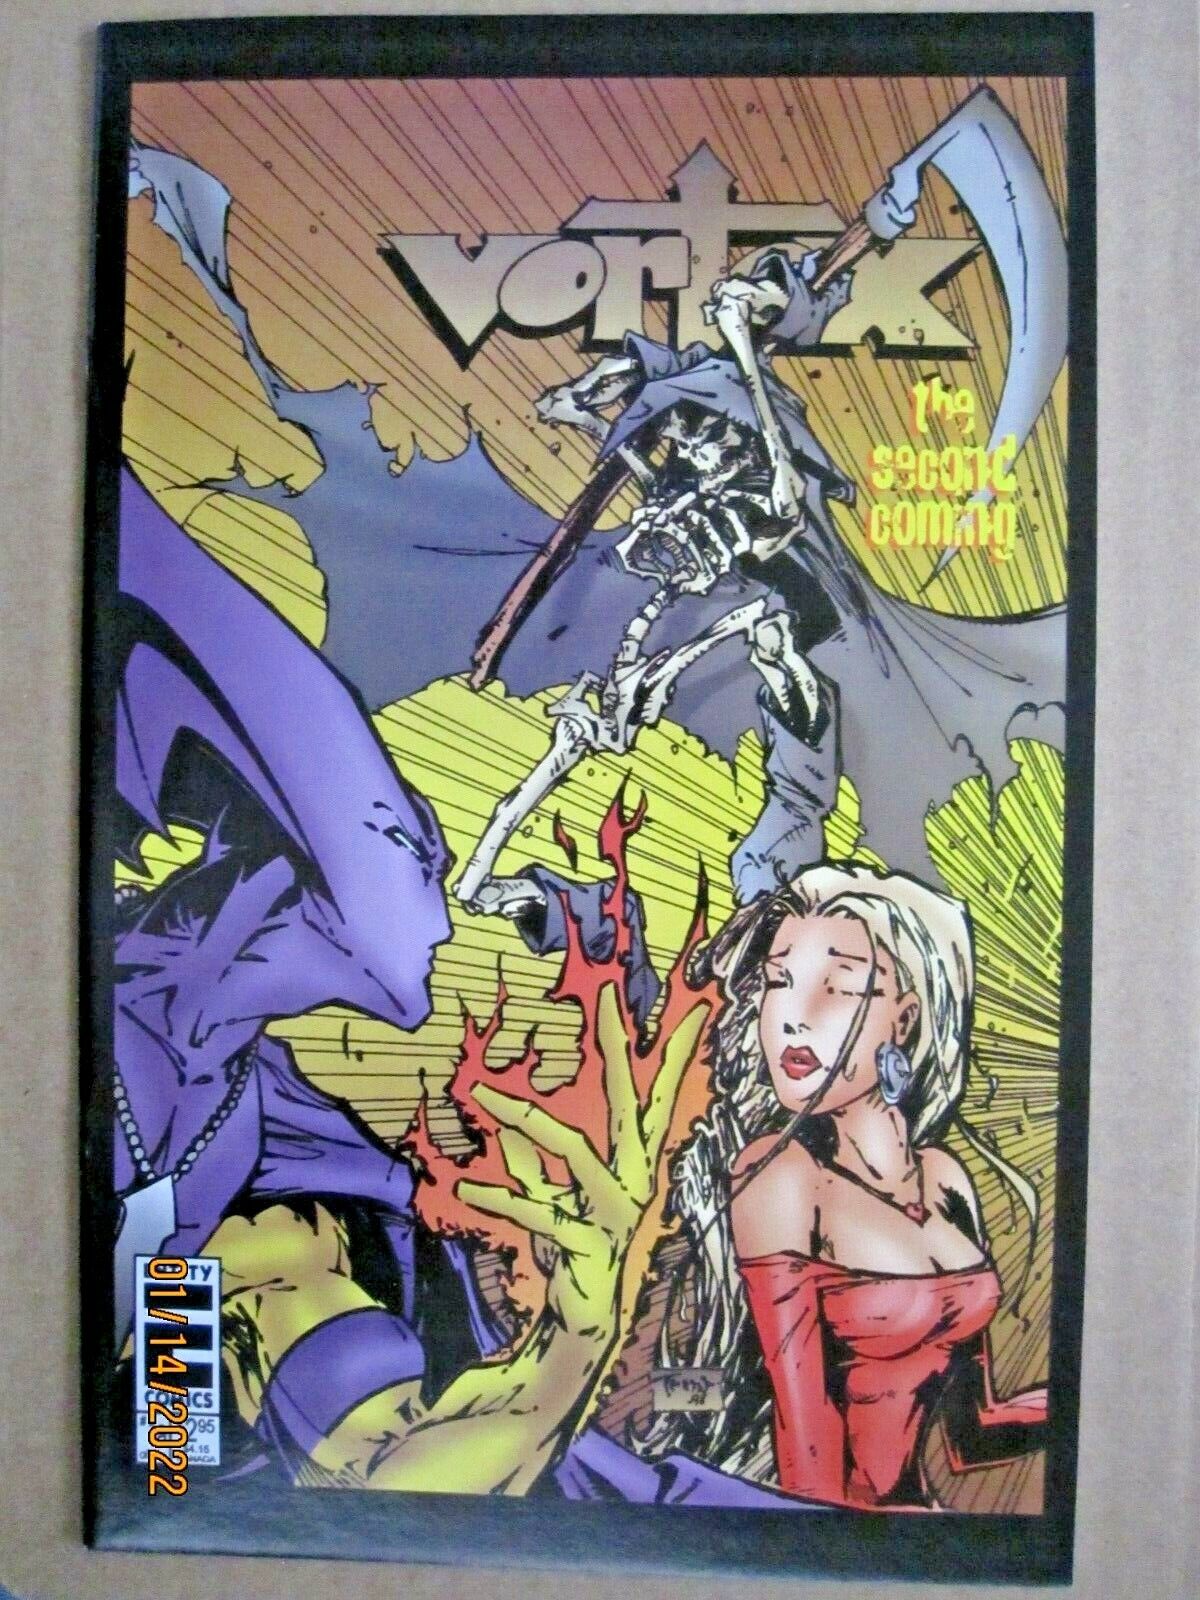 1996 ENTITY COMICS VORTEX: SECOND COMING 1a TRENT KANIUGA COVER